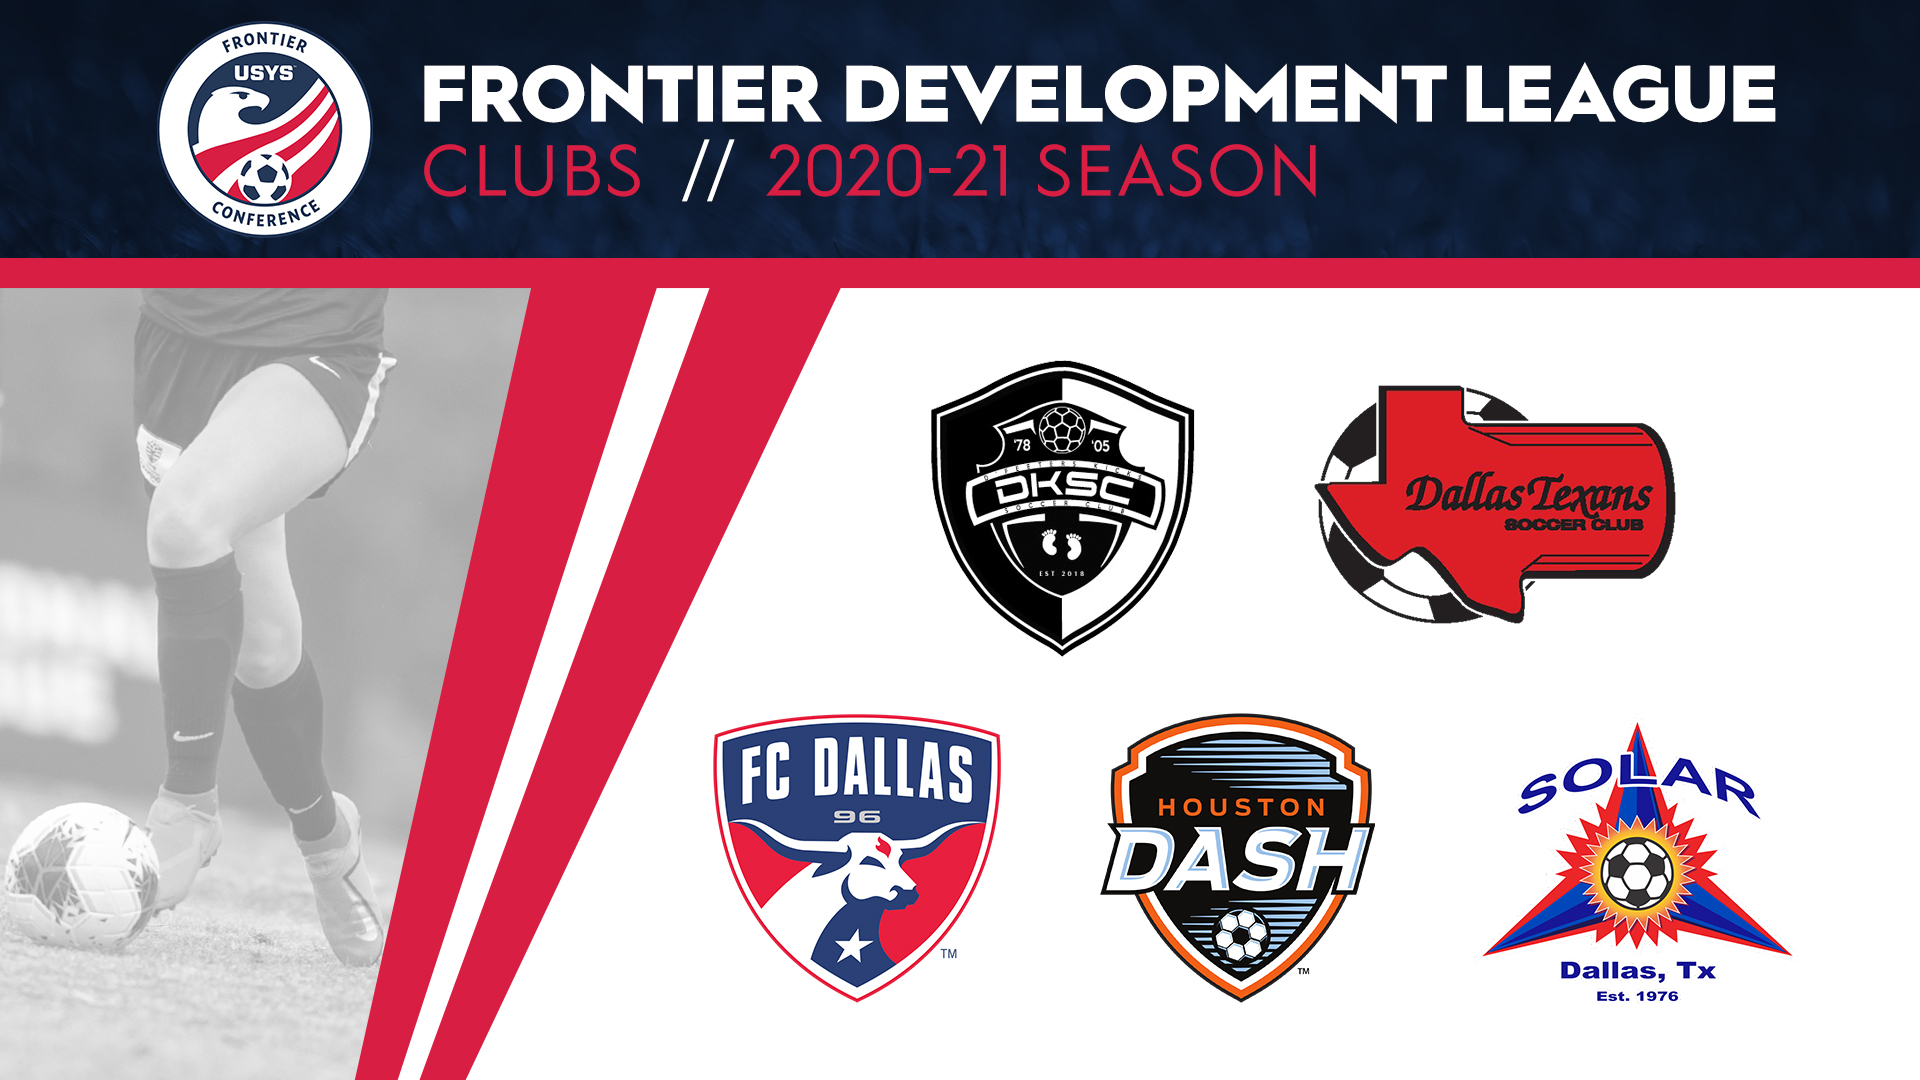 Frontier Development League announces clubs